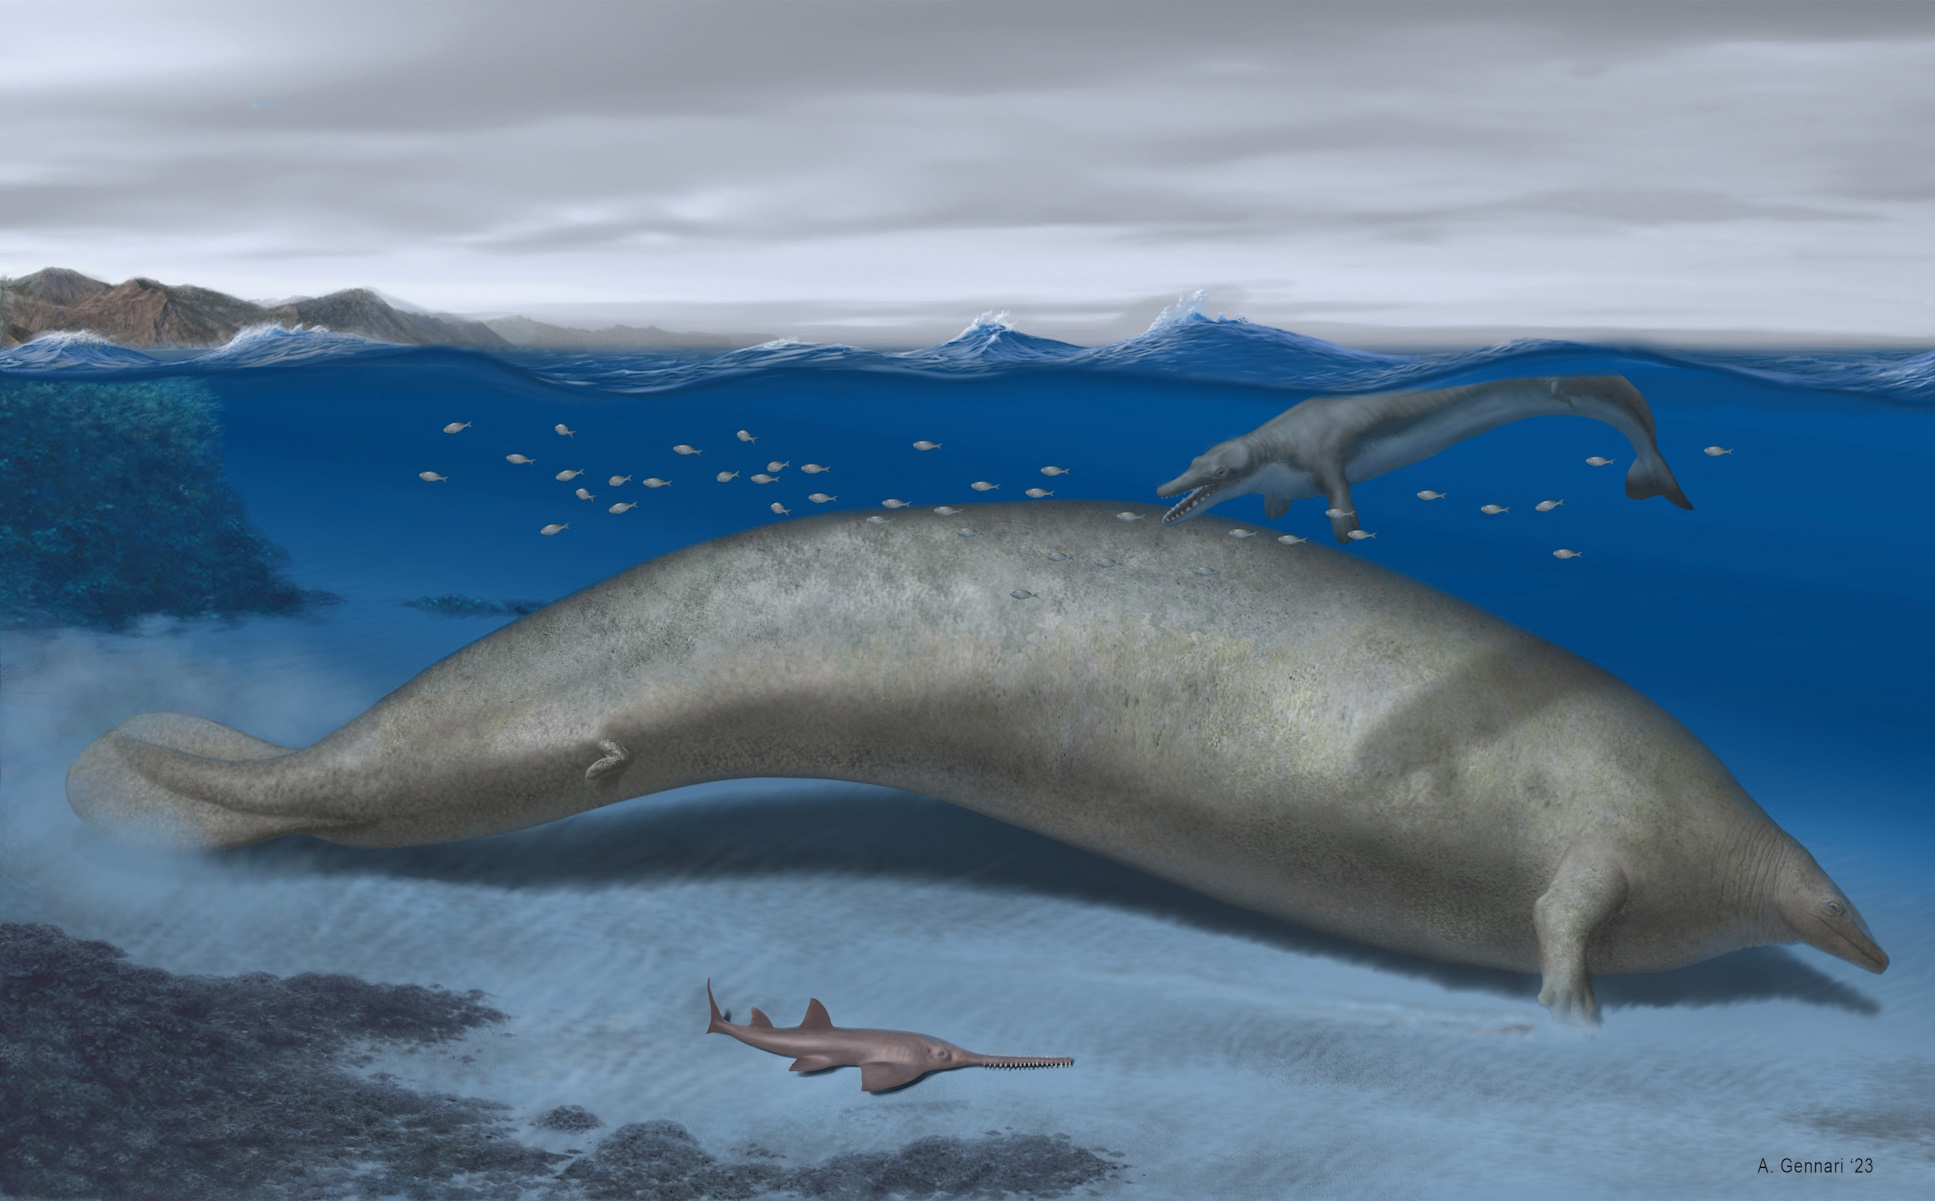 Αίγυπτος: Ανακαλύφθηκαν απολιθωμένα οστά φάλαινας ηλικίας 41 εκατομμυρίων ετών